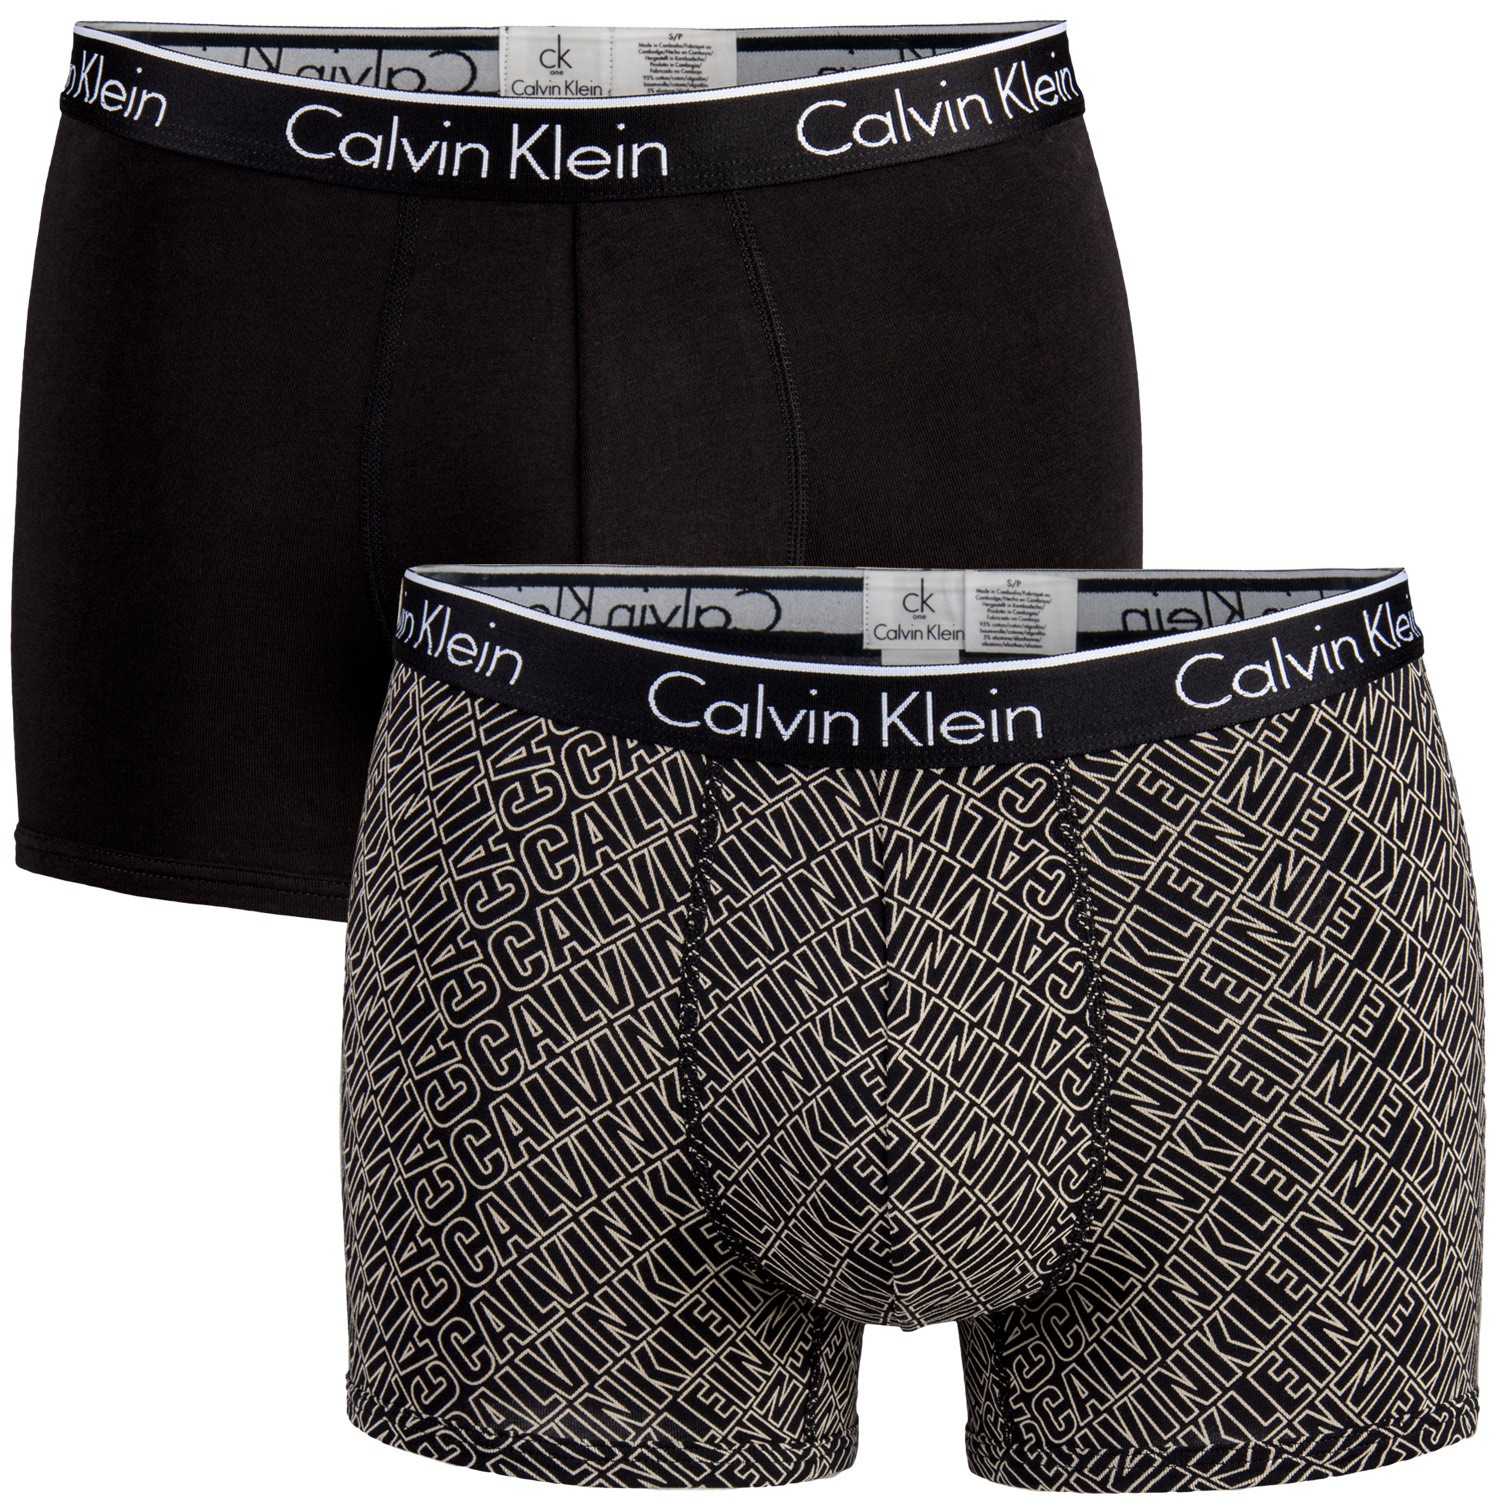 Calvin Klein CK One Core Cotton Trunk